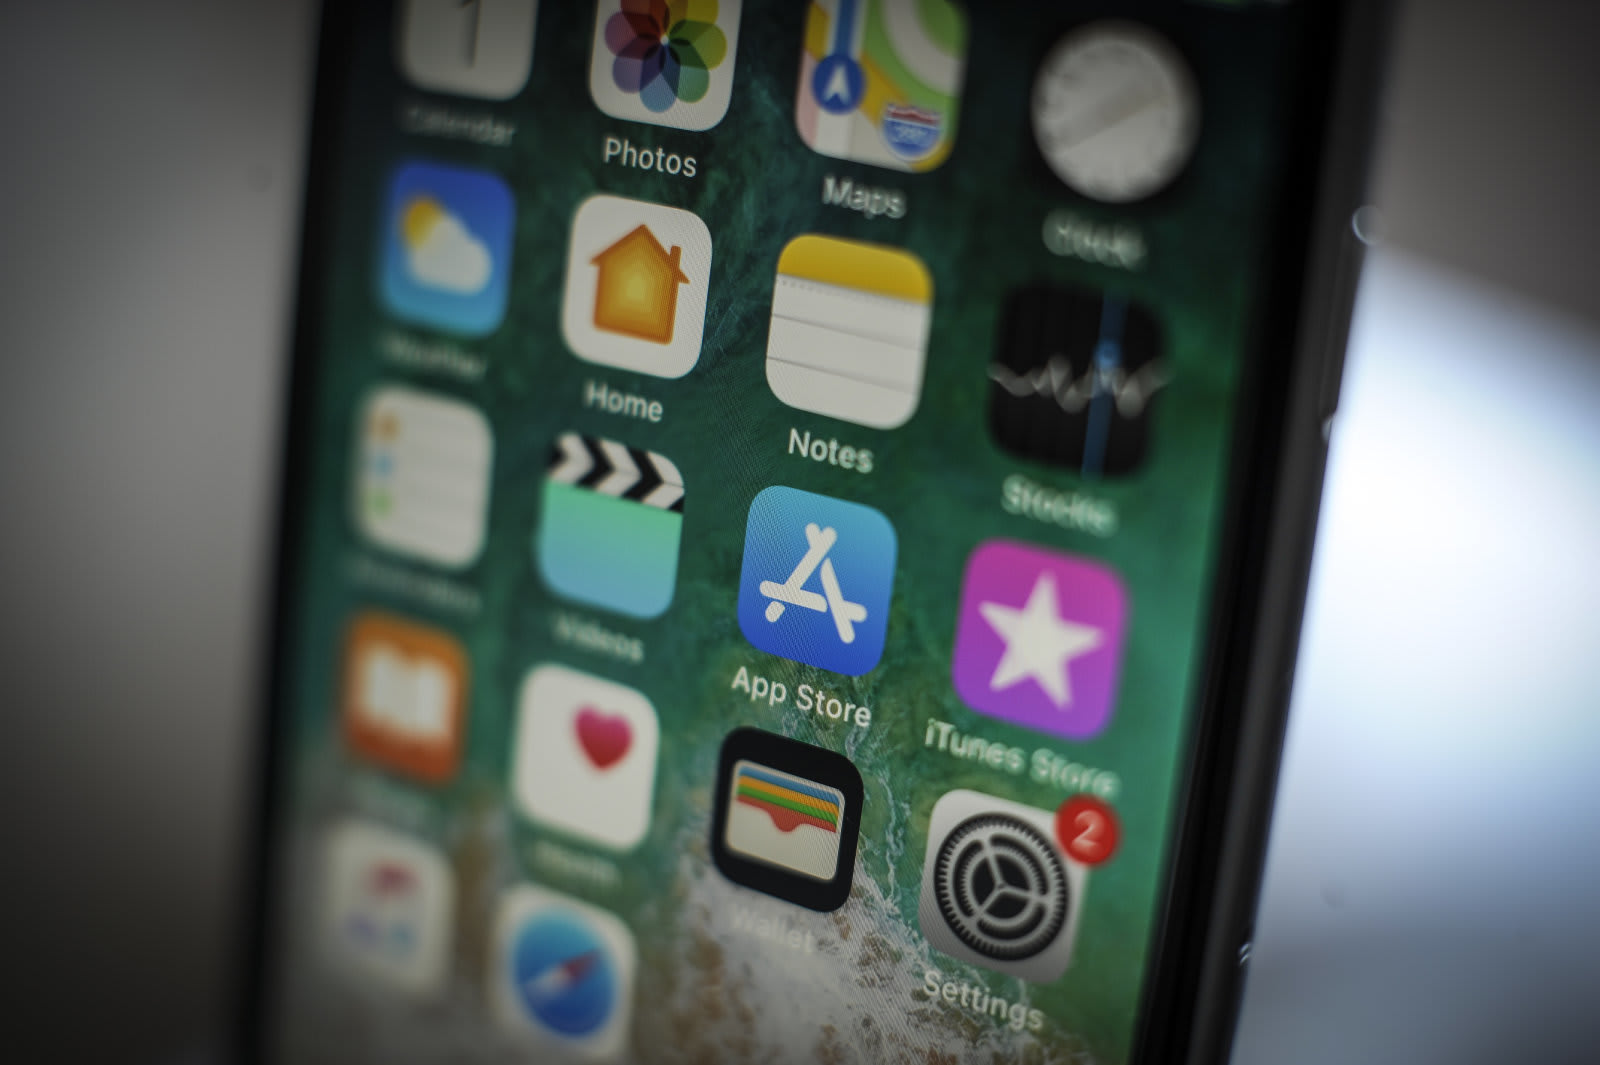 Iphoneの標準ブラウザをsafari以外にできる アップルが検討中とのうわさ Bloomberg報道 Engadget 日本版